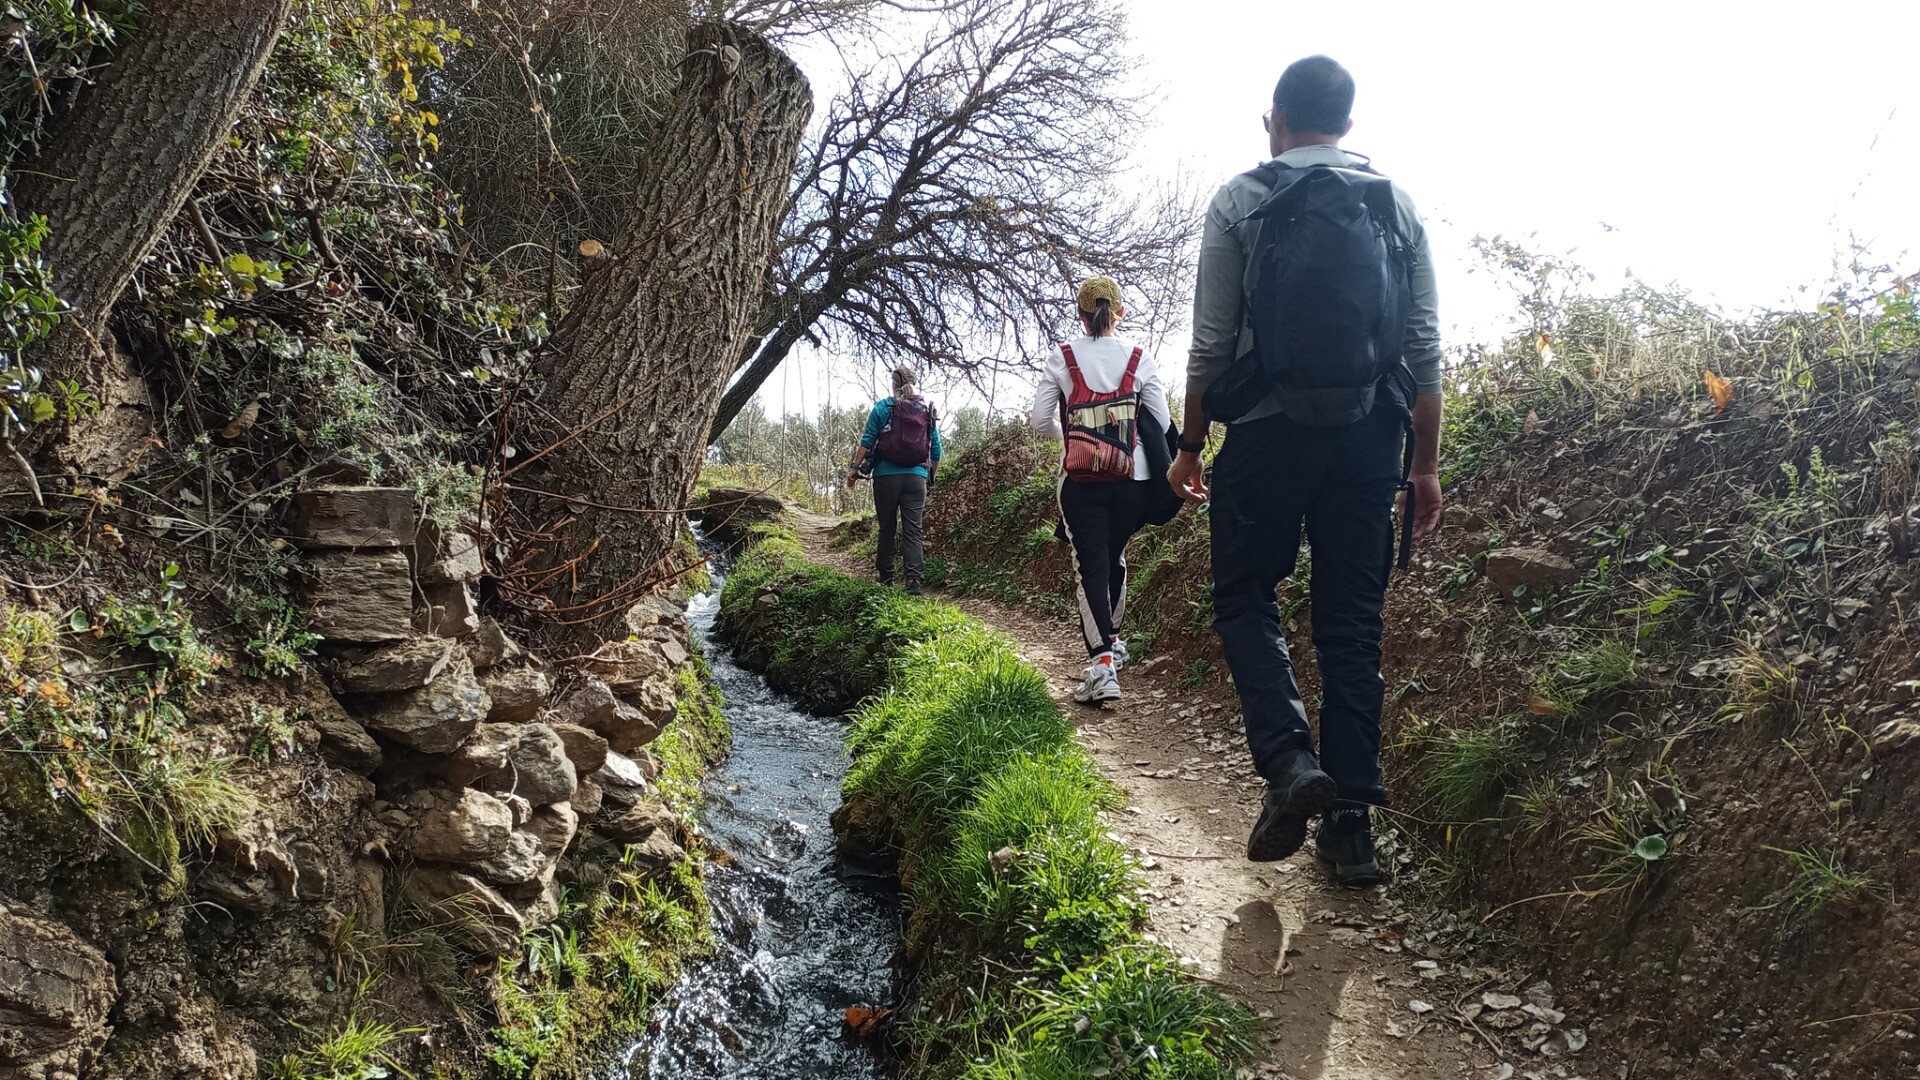 Walking alongside an irrigation channel in the Alpujarra region of Andalucia, Spain